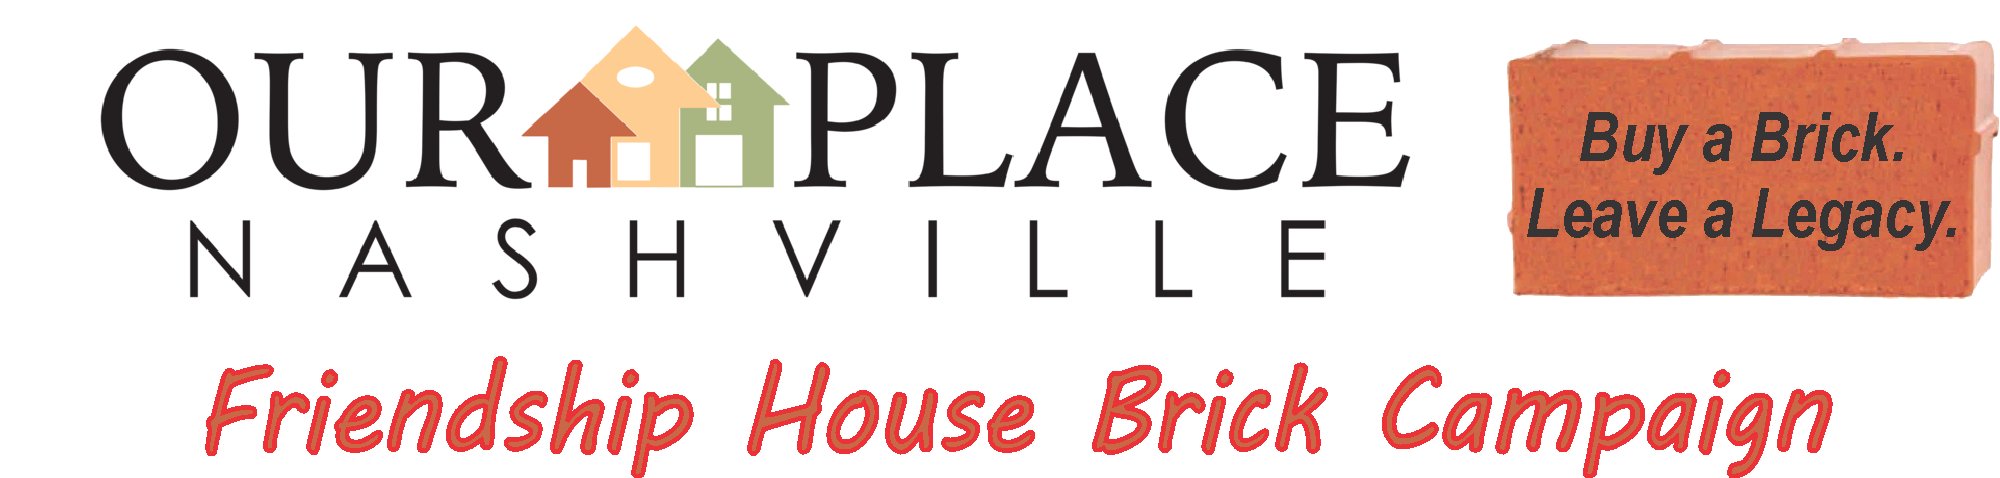 Our Place Nashville Friendship House Brick Campaign